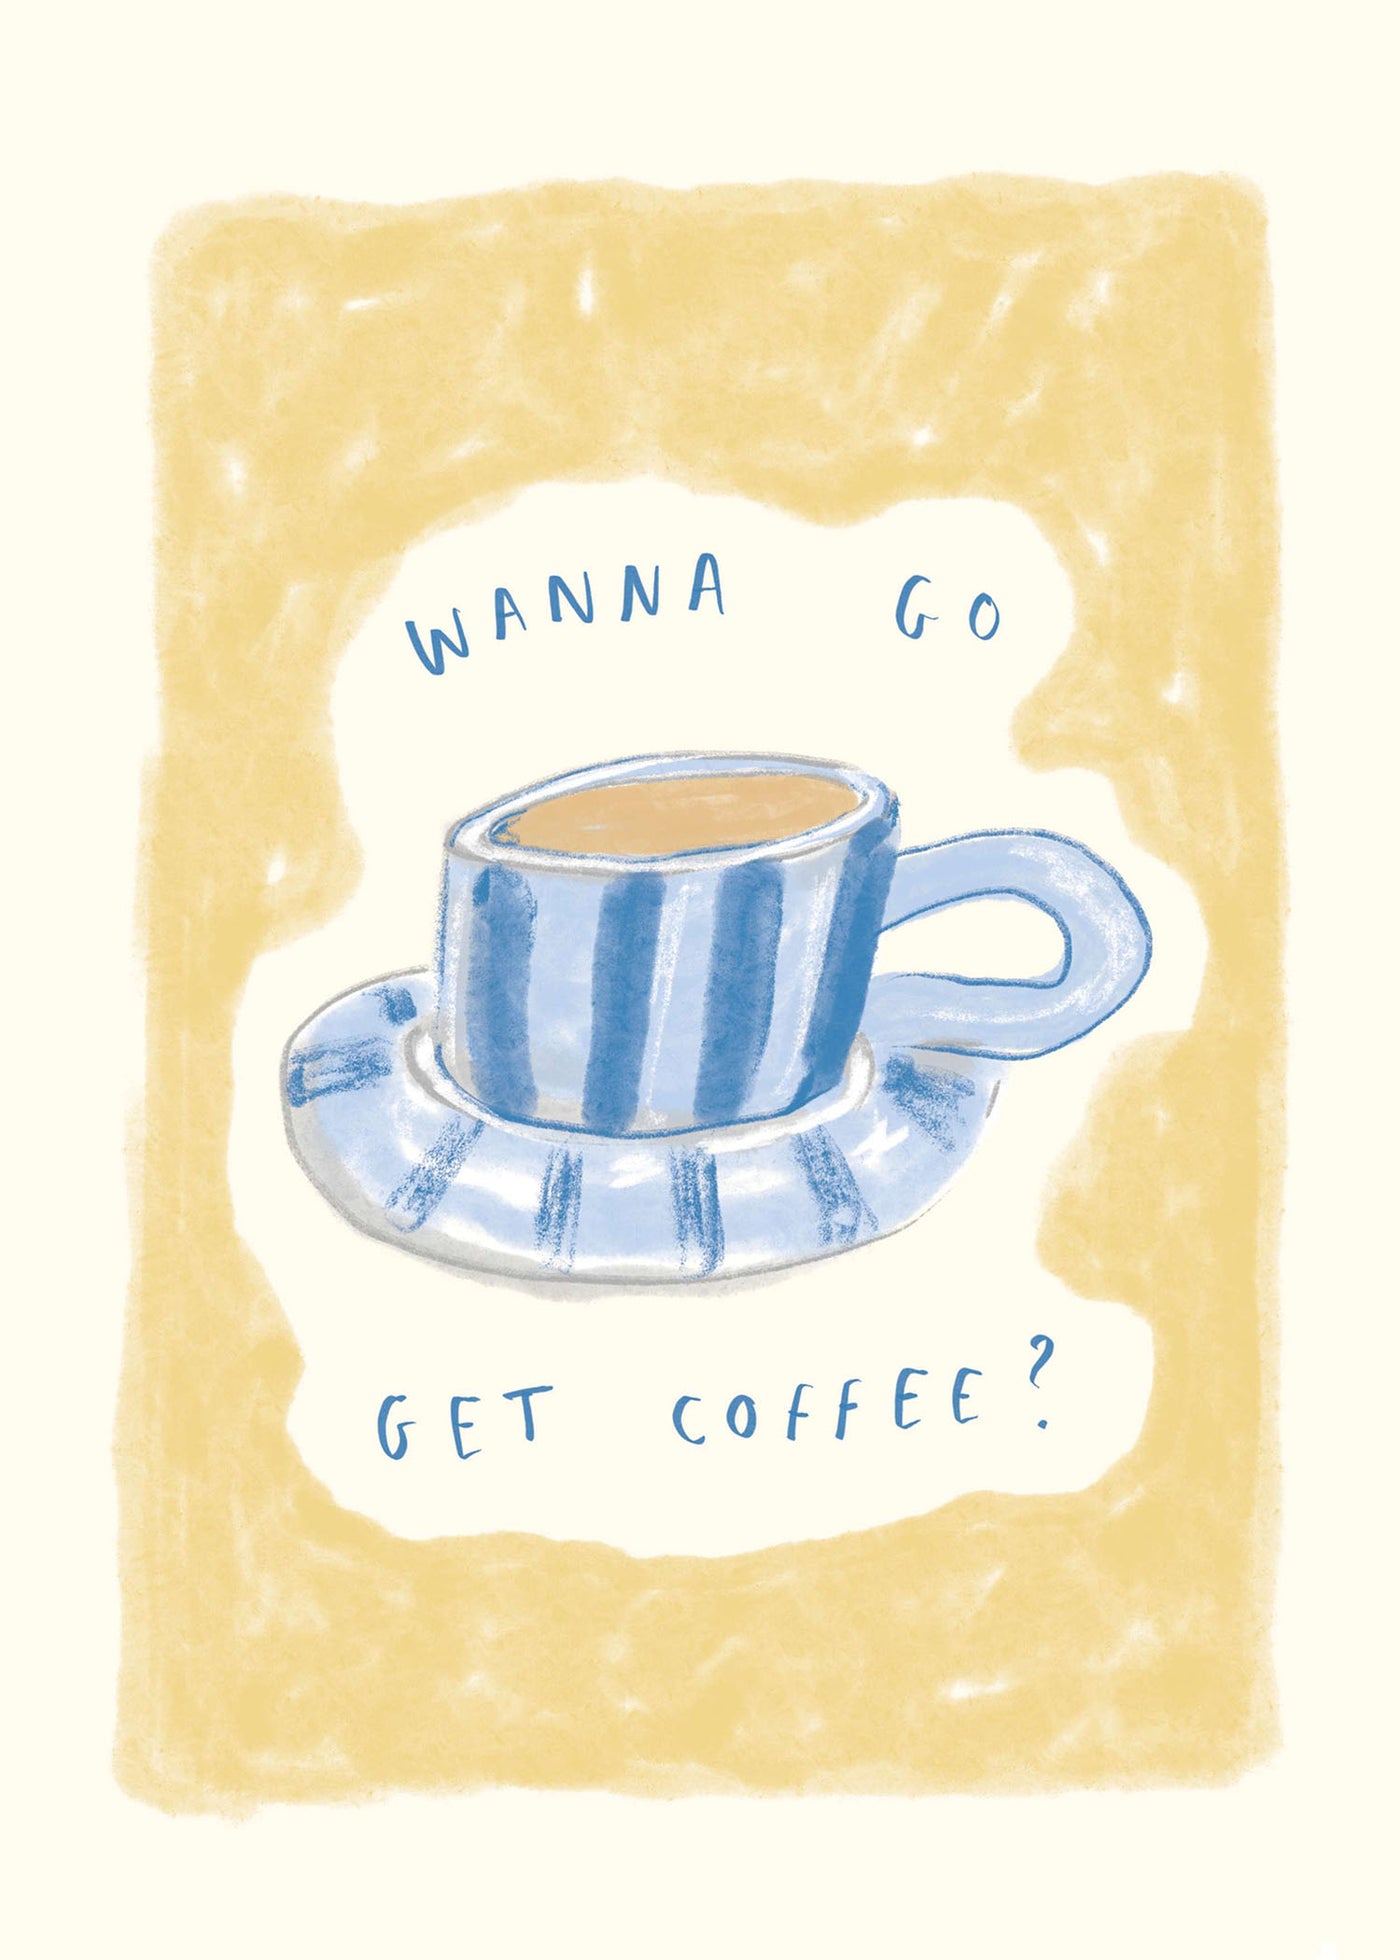 Wanna Get Coffee